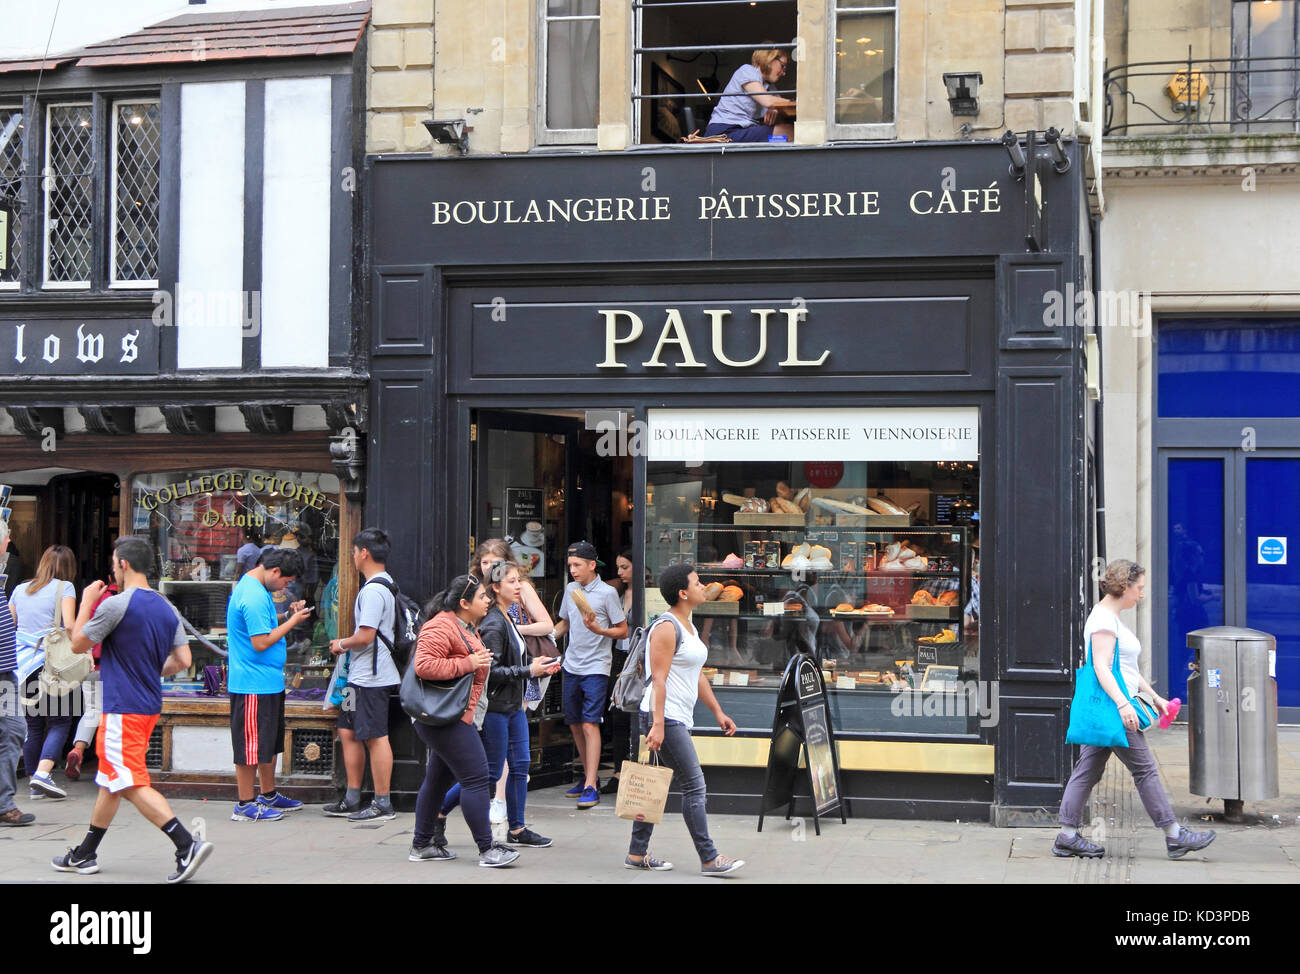 Paul, Boulangerie, Patisserie, Café, shop, Oxford, UK Stock Photo